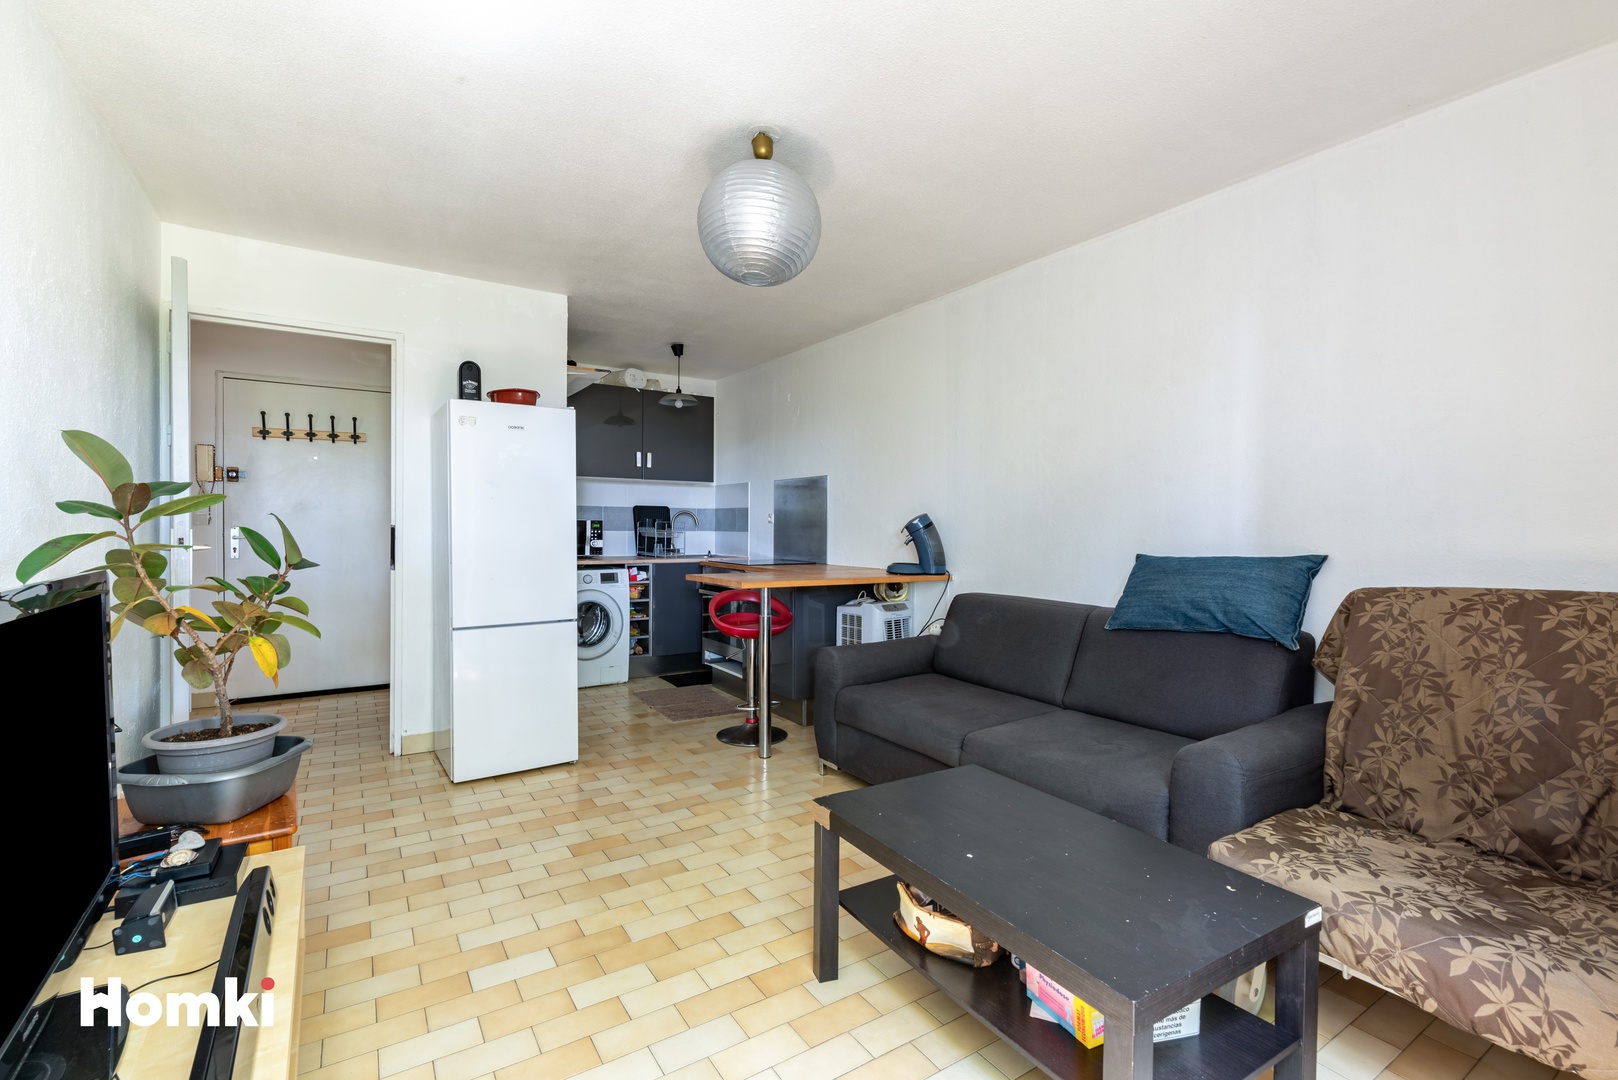 Homki - Vente Appartement  de 37.0 m² à Montpellier 34080